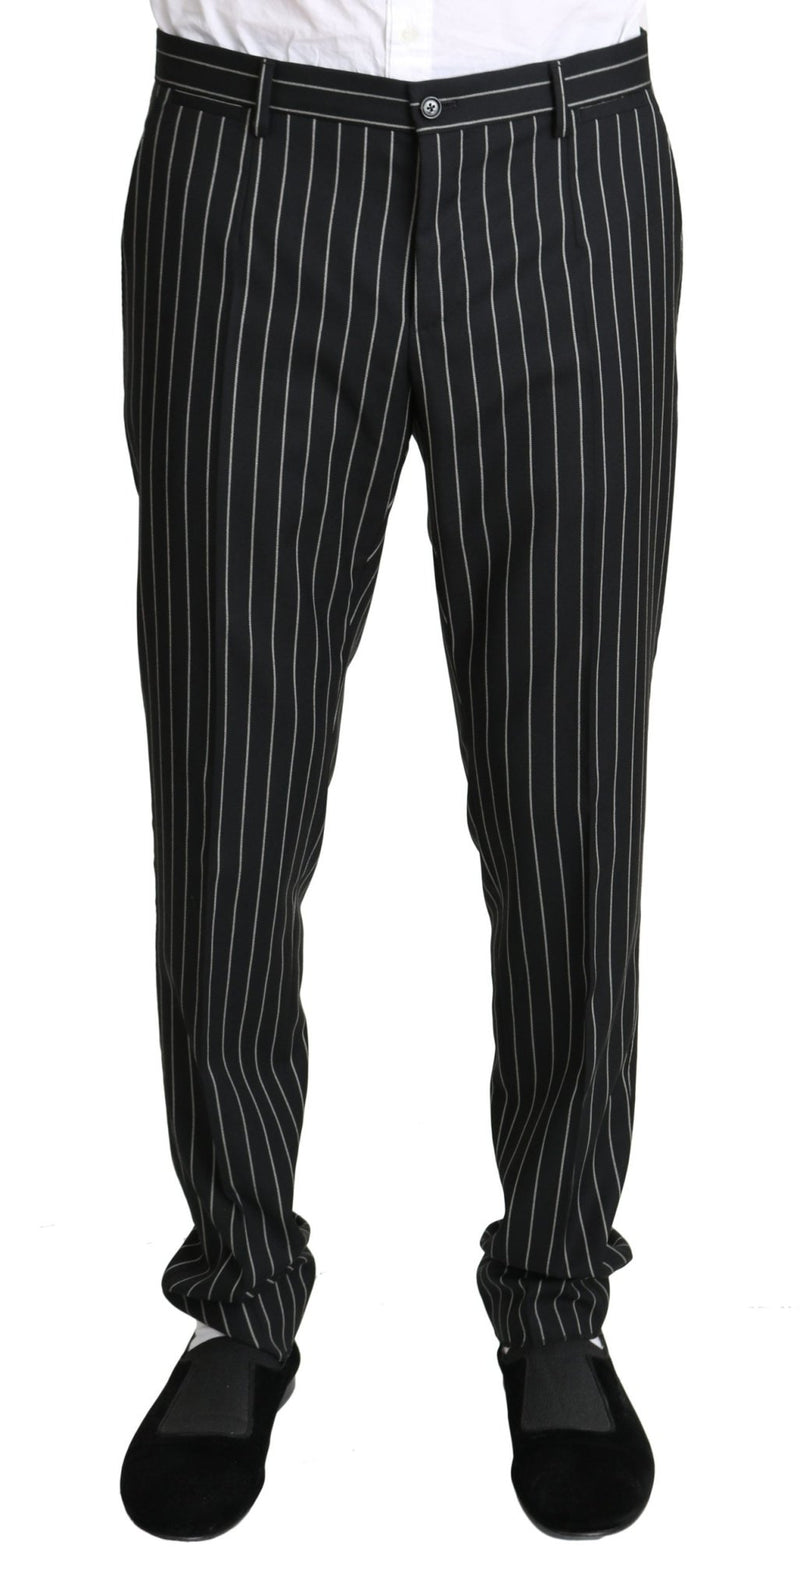 Black White Striped 3 Piece SICILIA Suit - Avaz Shop